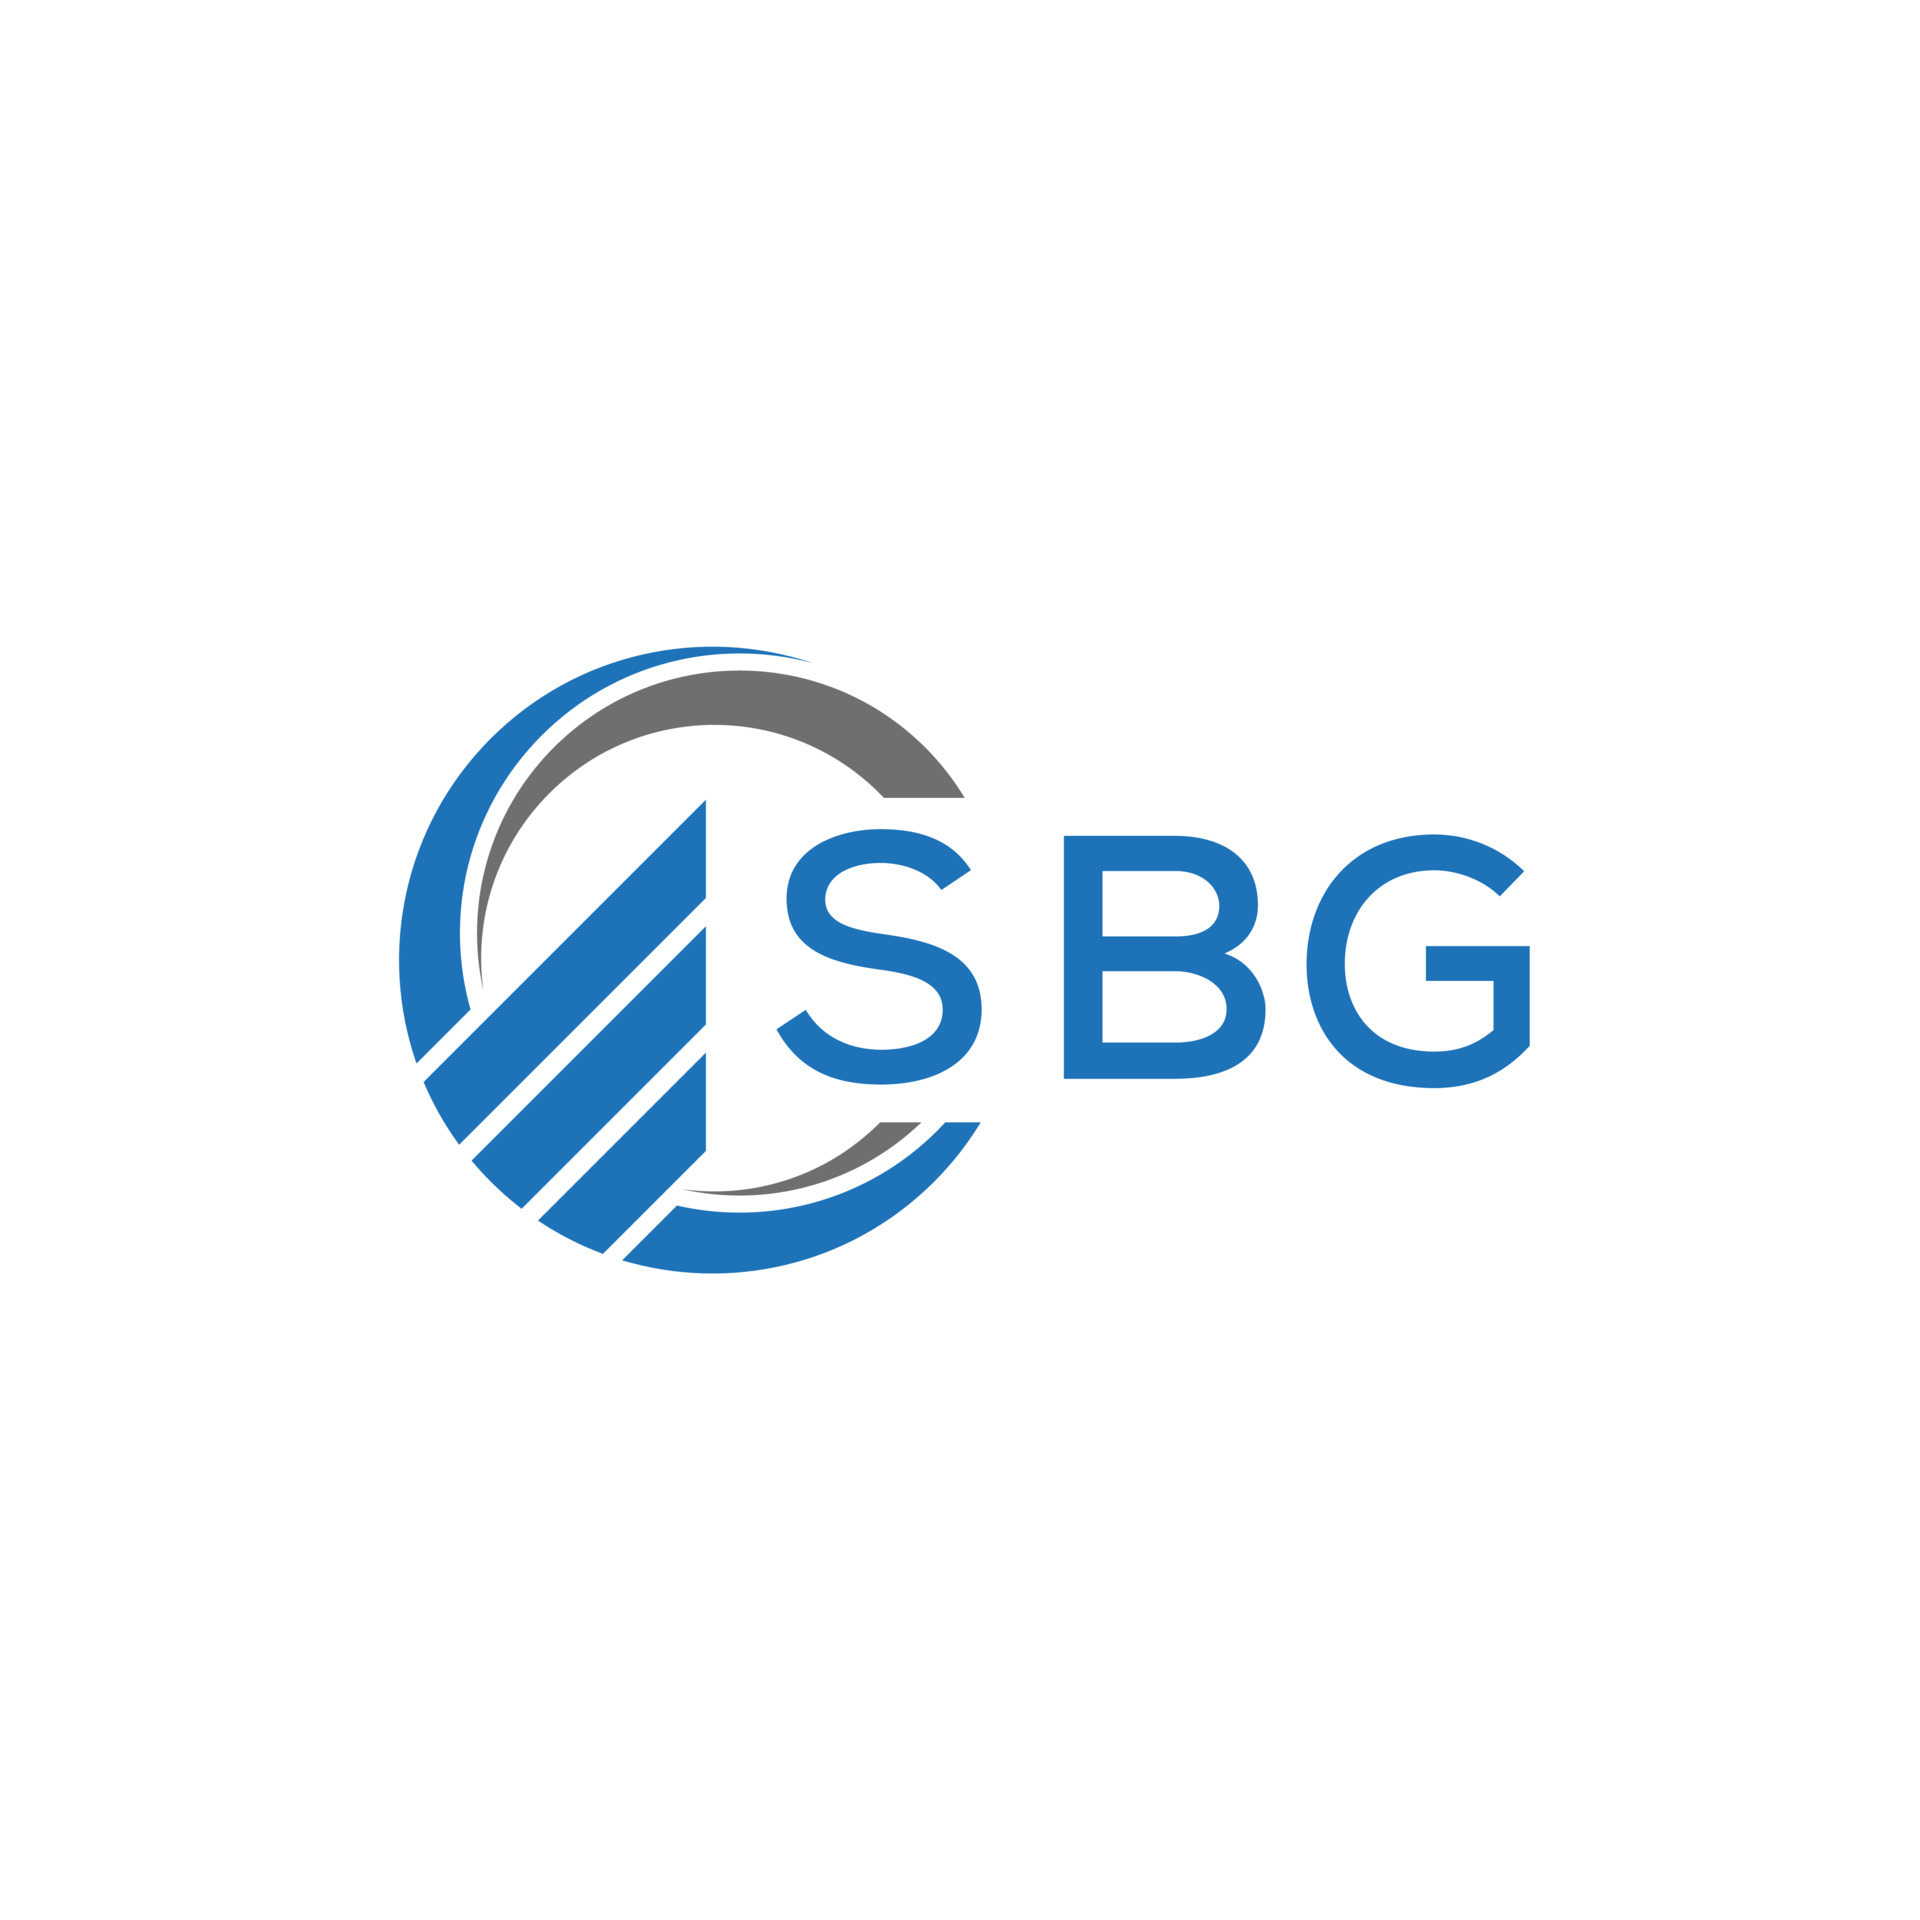 Sbg letter logo design on black background Vector Image